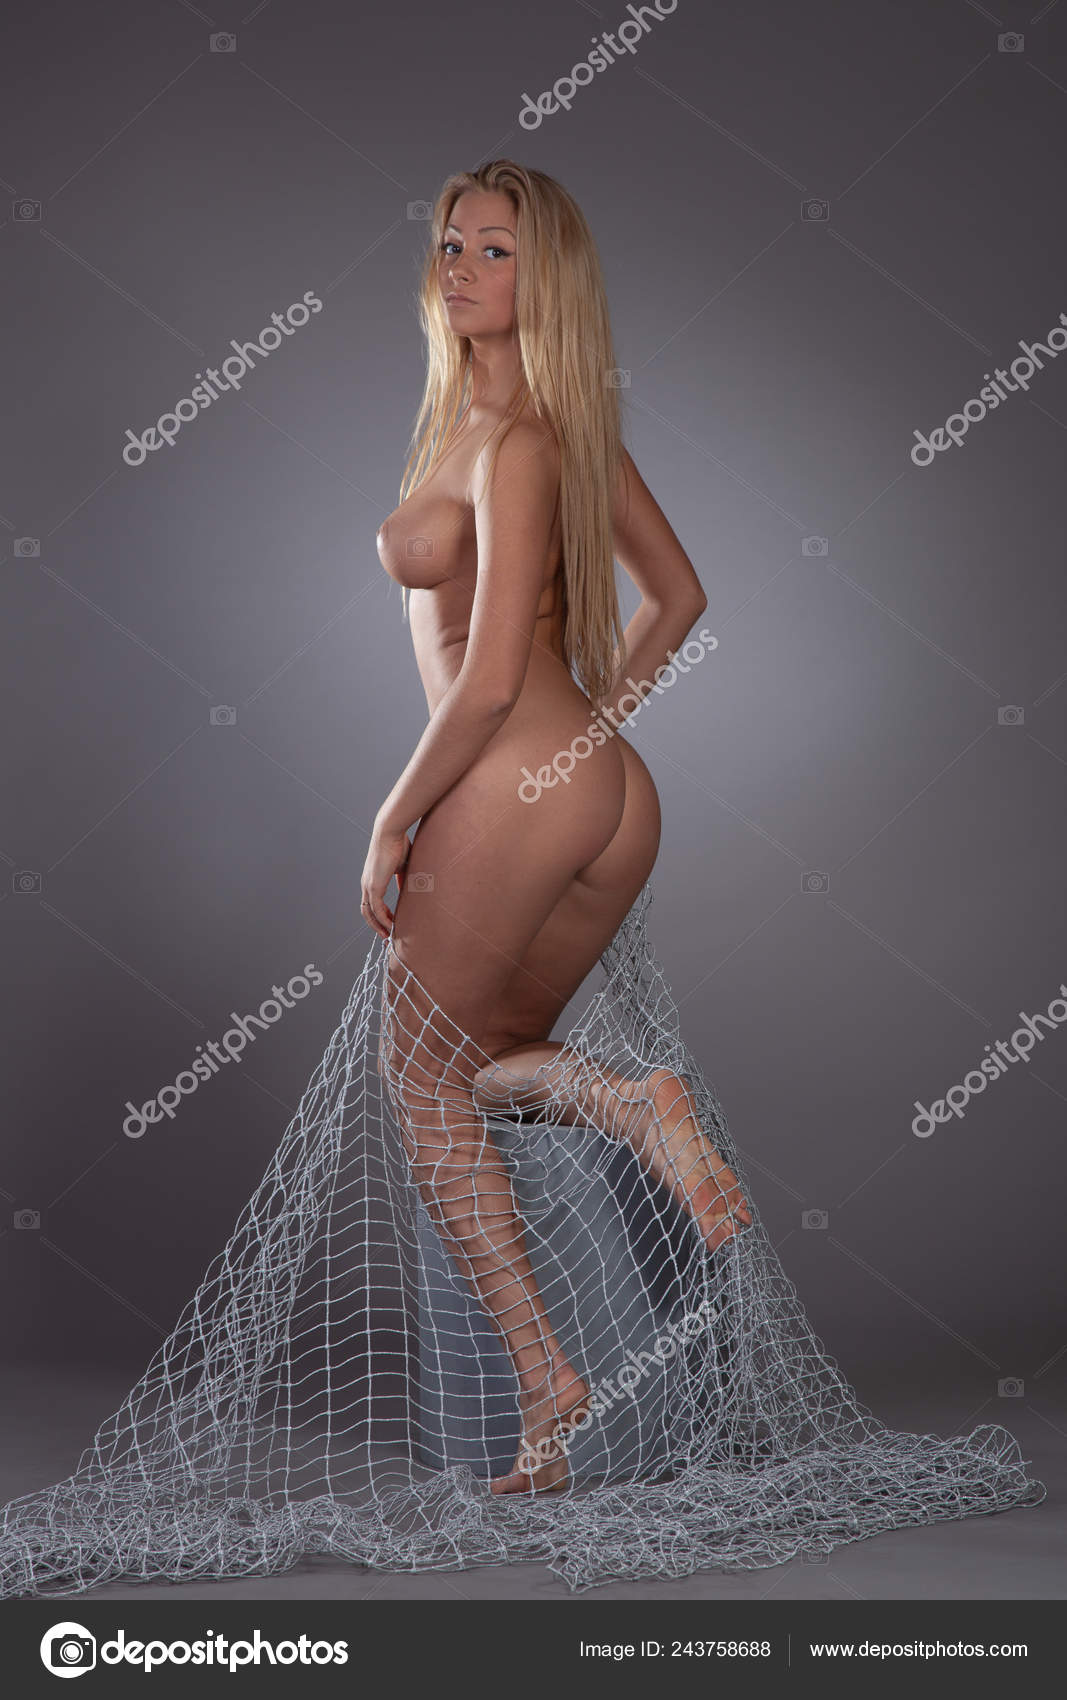 https://st4n.depositphotos.com/10086424/24375/i/1600/depositphotos_243758688-stock-photo-young-beautiful-girl-posing-nude.jpg